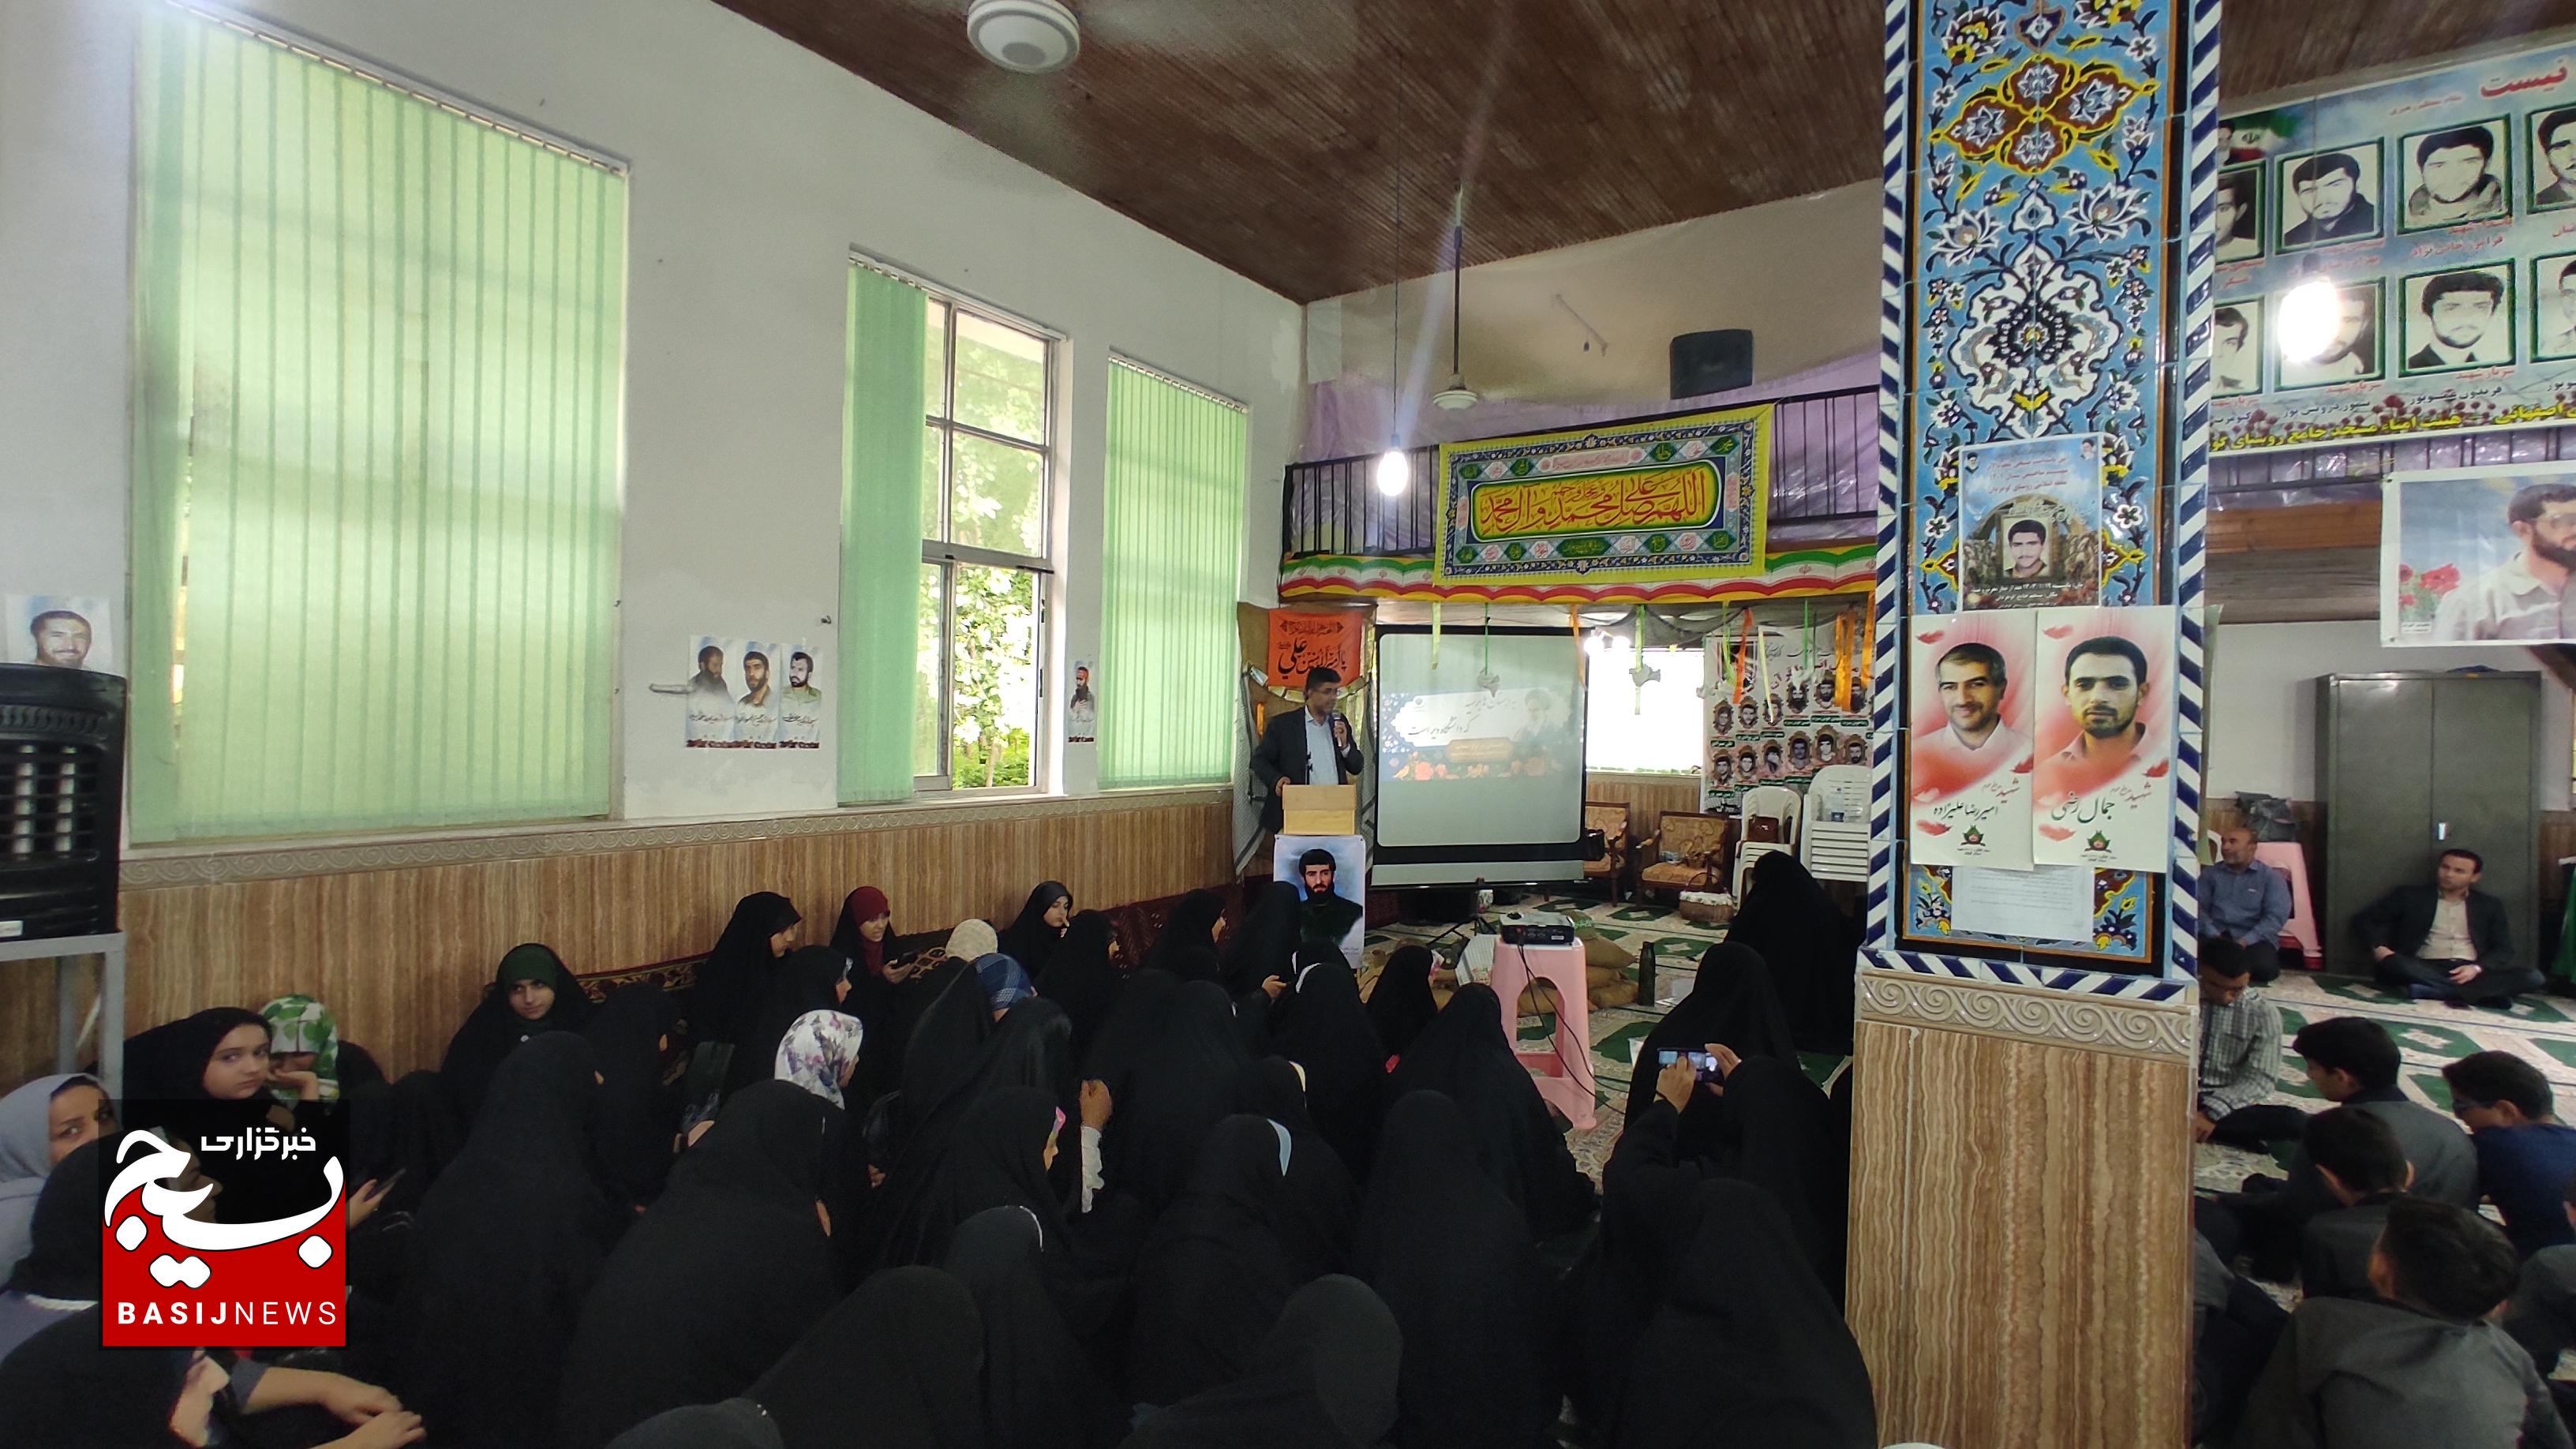 دومین مراسم فرهنگی« از مدرسه محل تا مدرسه عشق» در آستانه اشرفیه برگزار شد